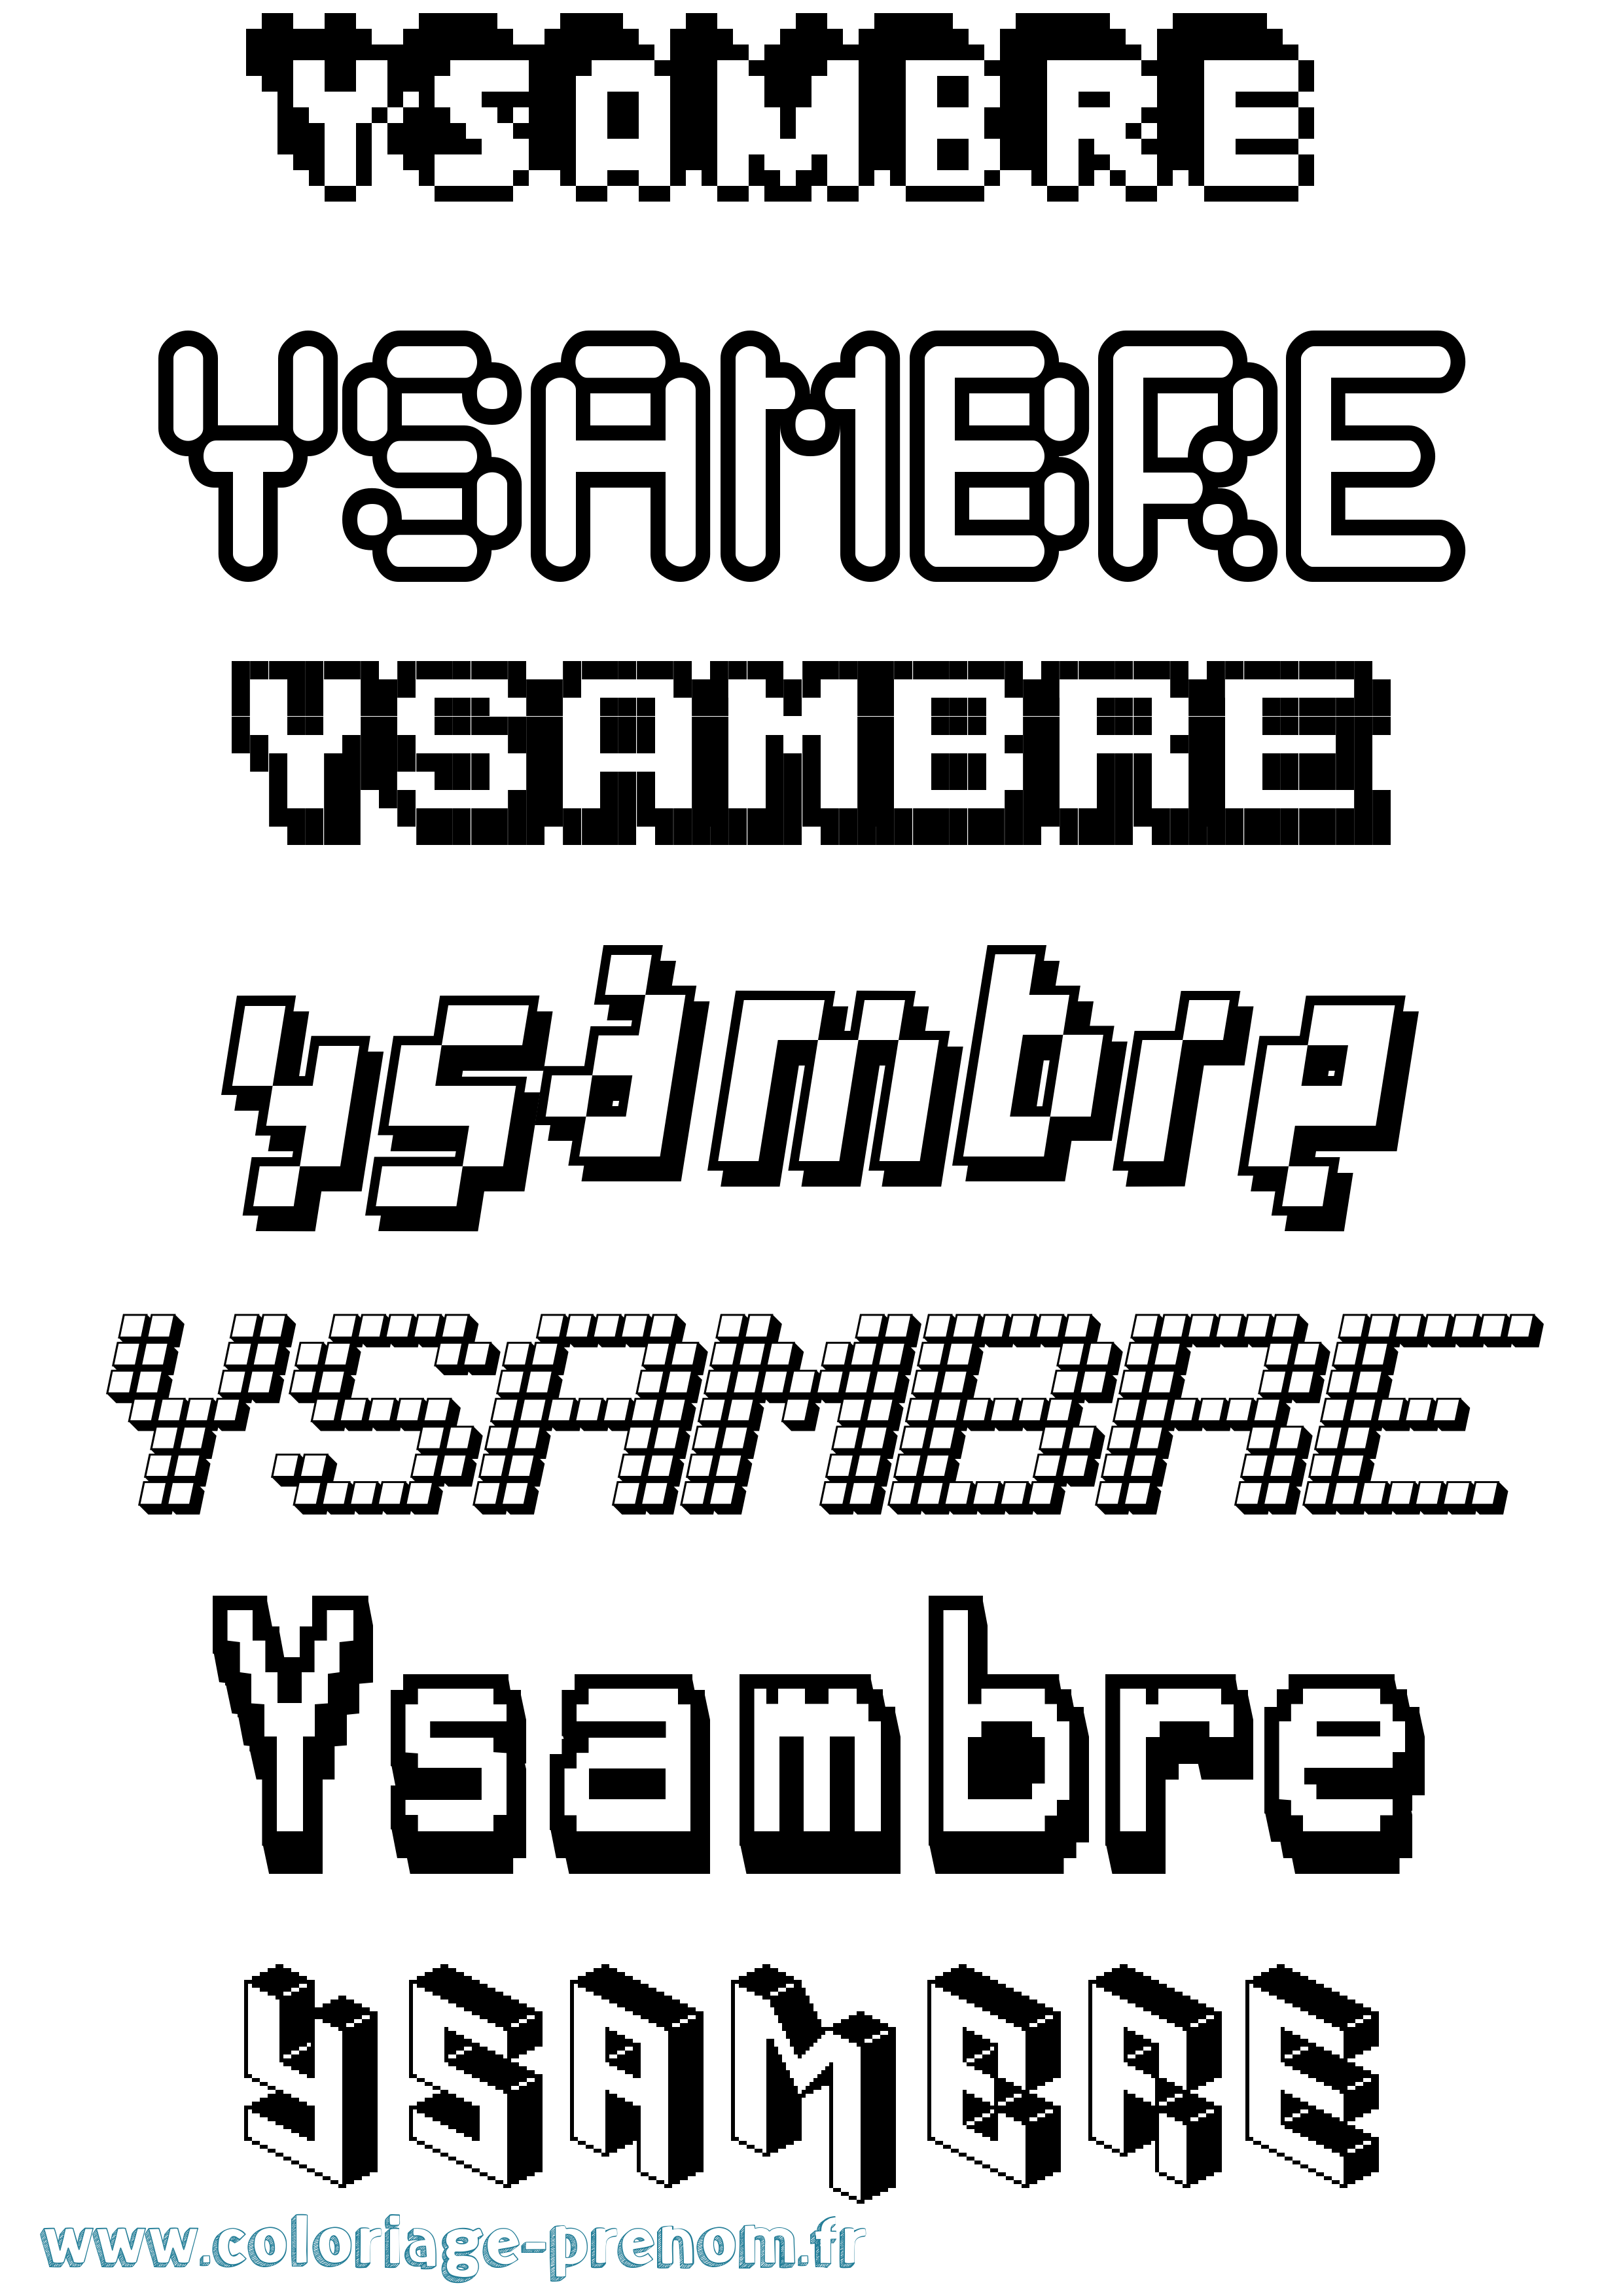 Coloriage prénom Ysambre Pixel